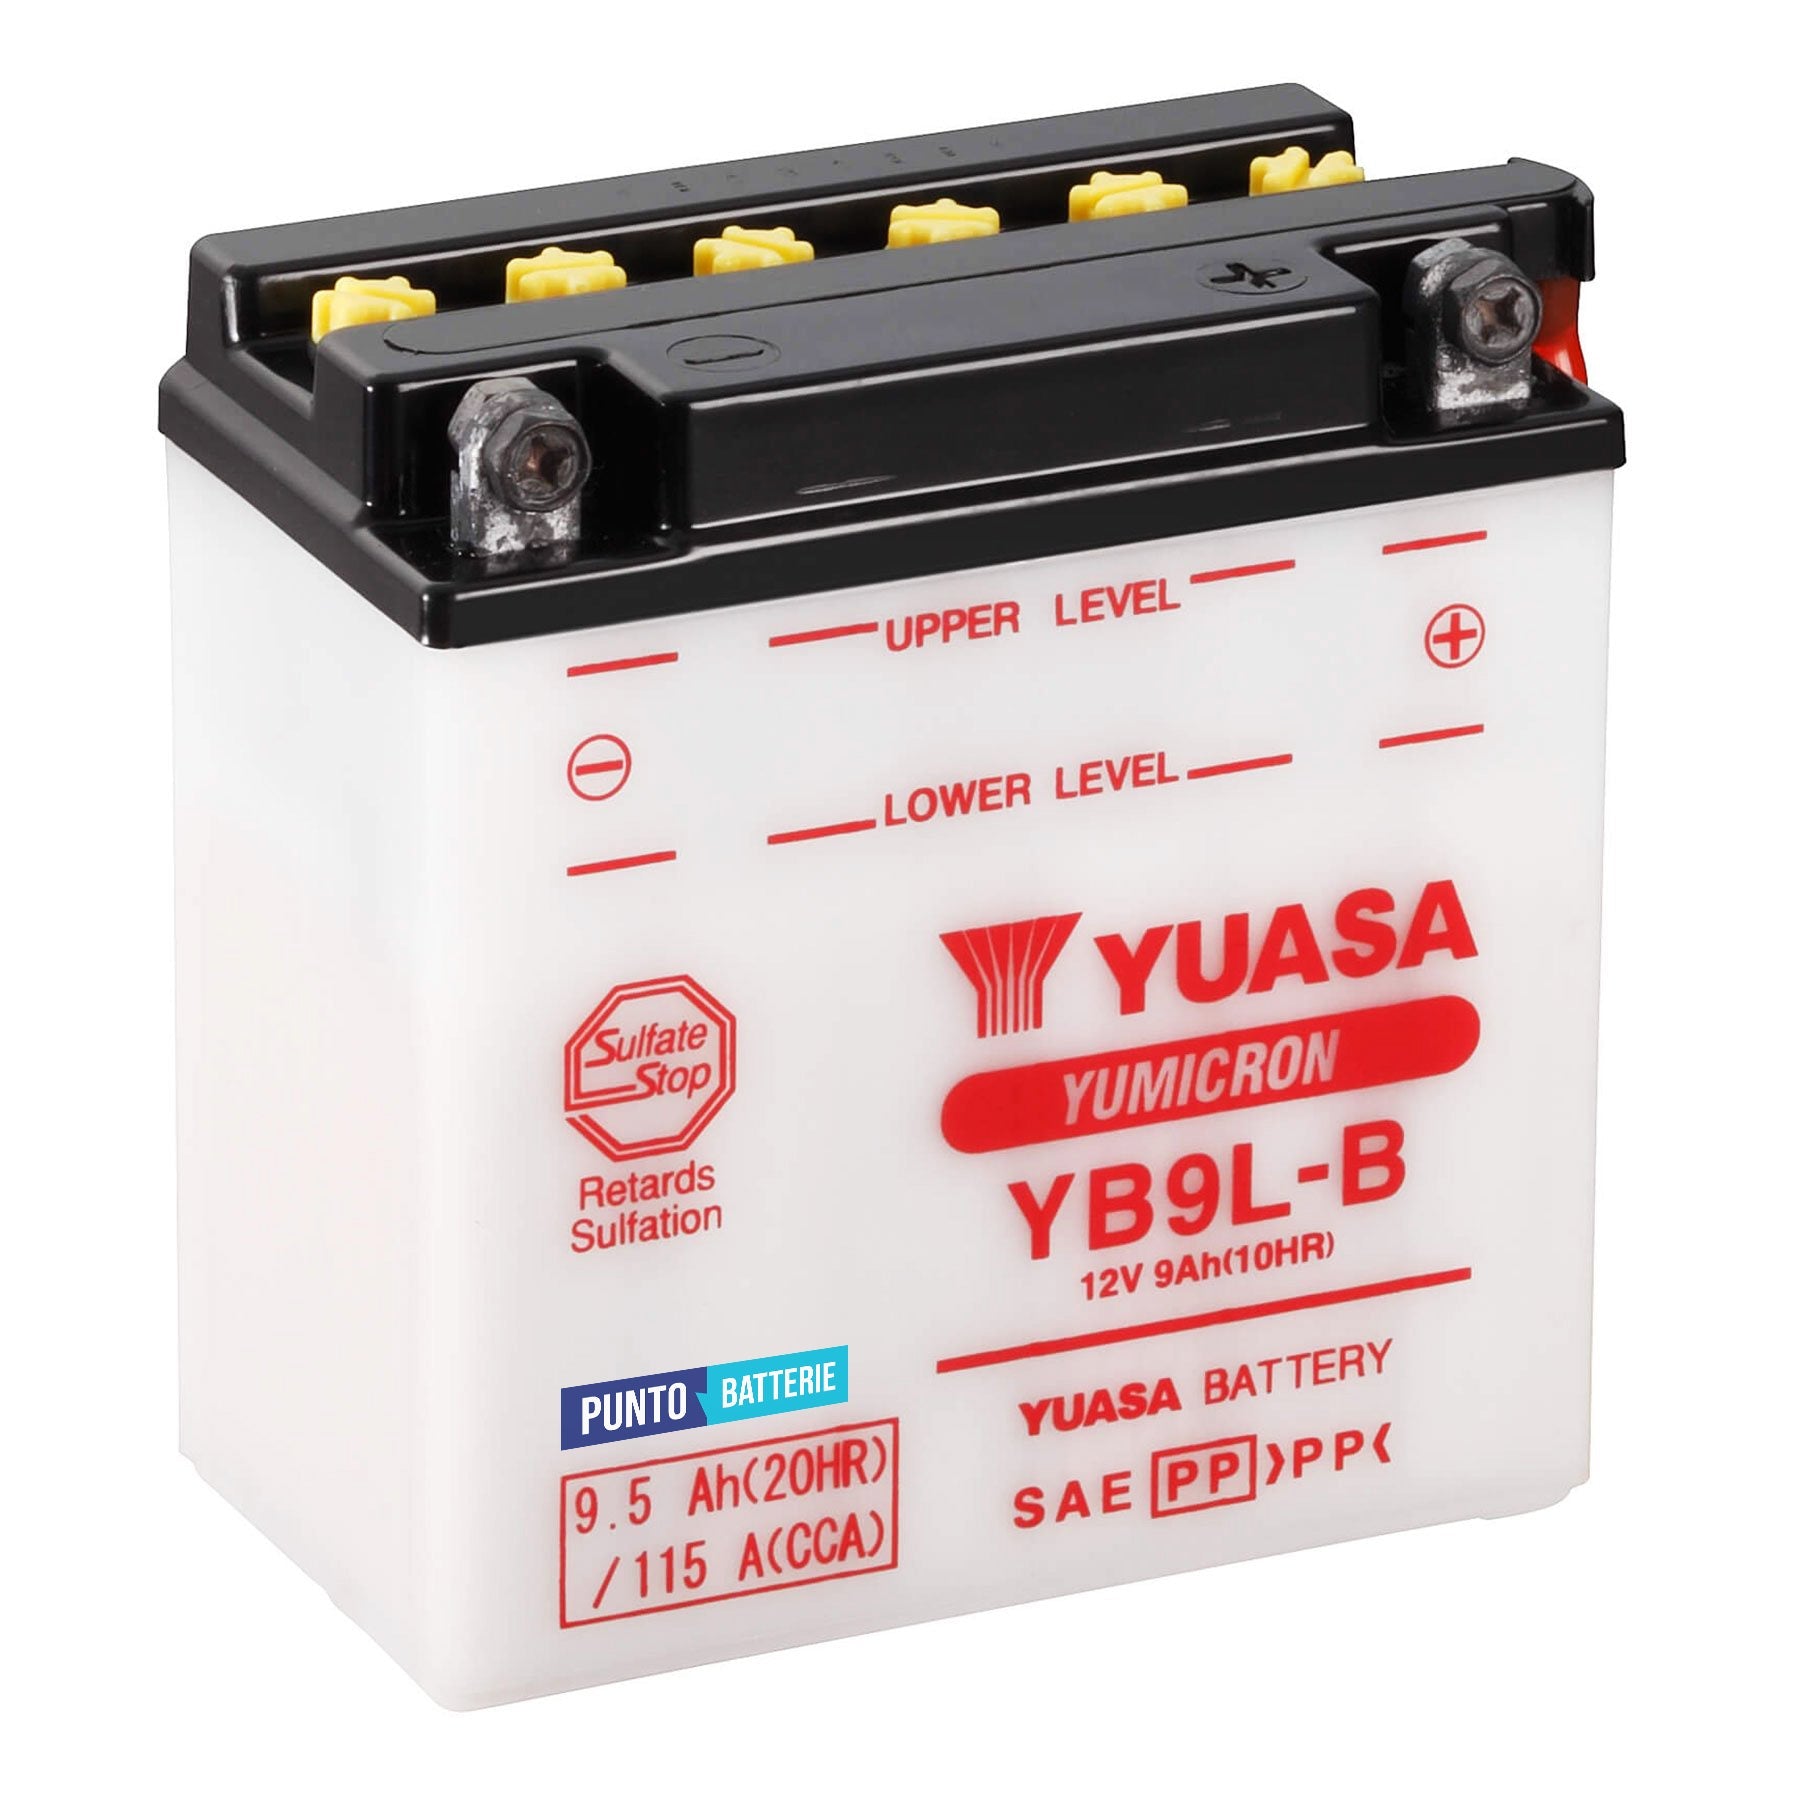 Batteria originale Yuasa YuMicron YB9L-B, dimensioni 137 x 77 x 141, polo positivo a destra, 12 volt, 9 amperora, 115 ampere. Batteria per moto, scooter e powersport.